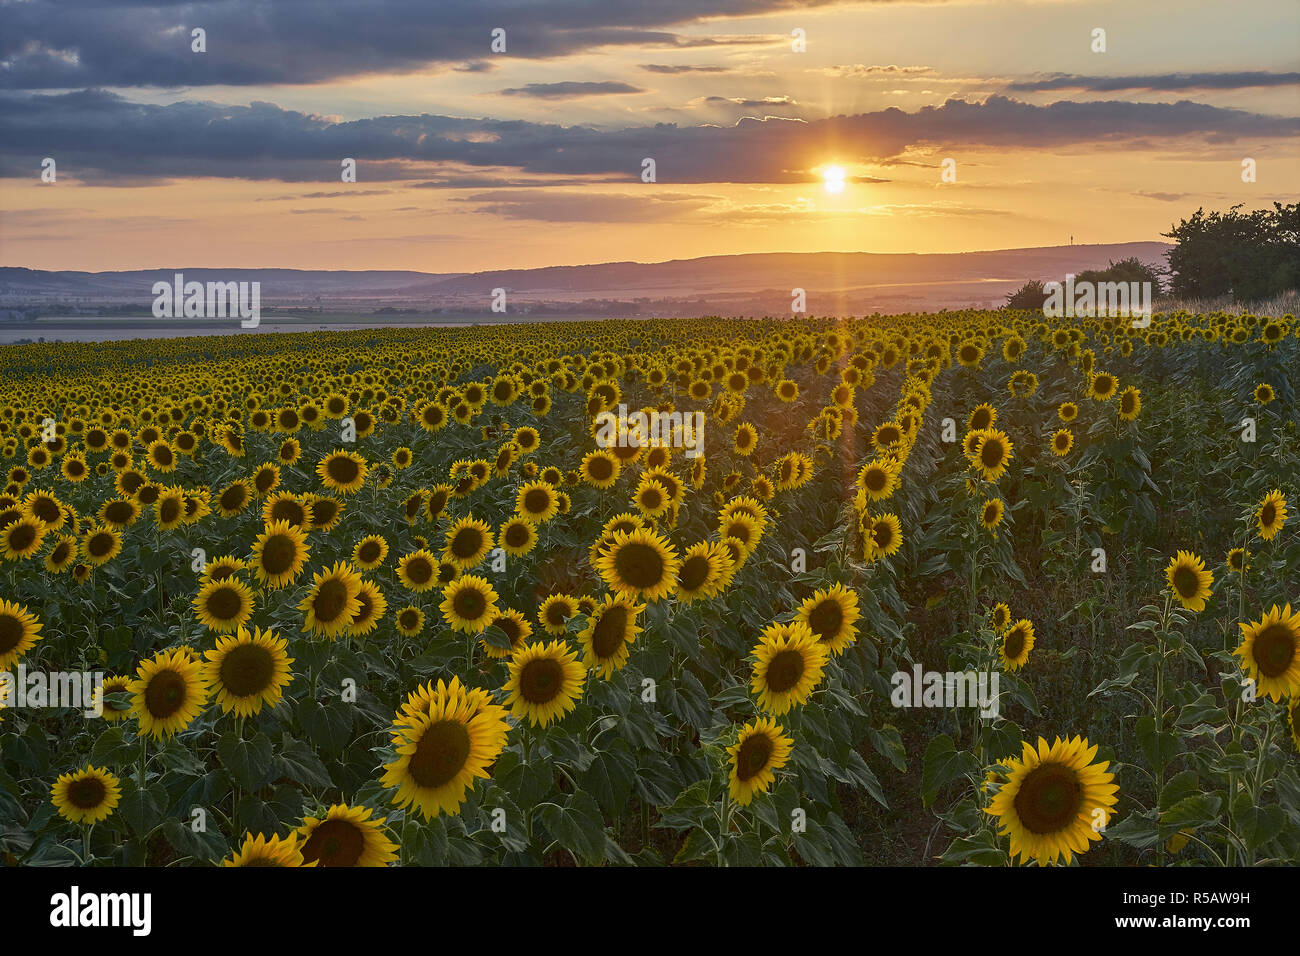 Sunflower field with sunset at the Kyffhäuser, Heldrungen, Kyffhauserkreis, Thuringia, Germany Stock Photo